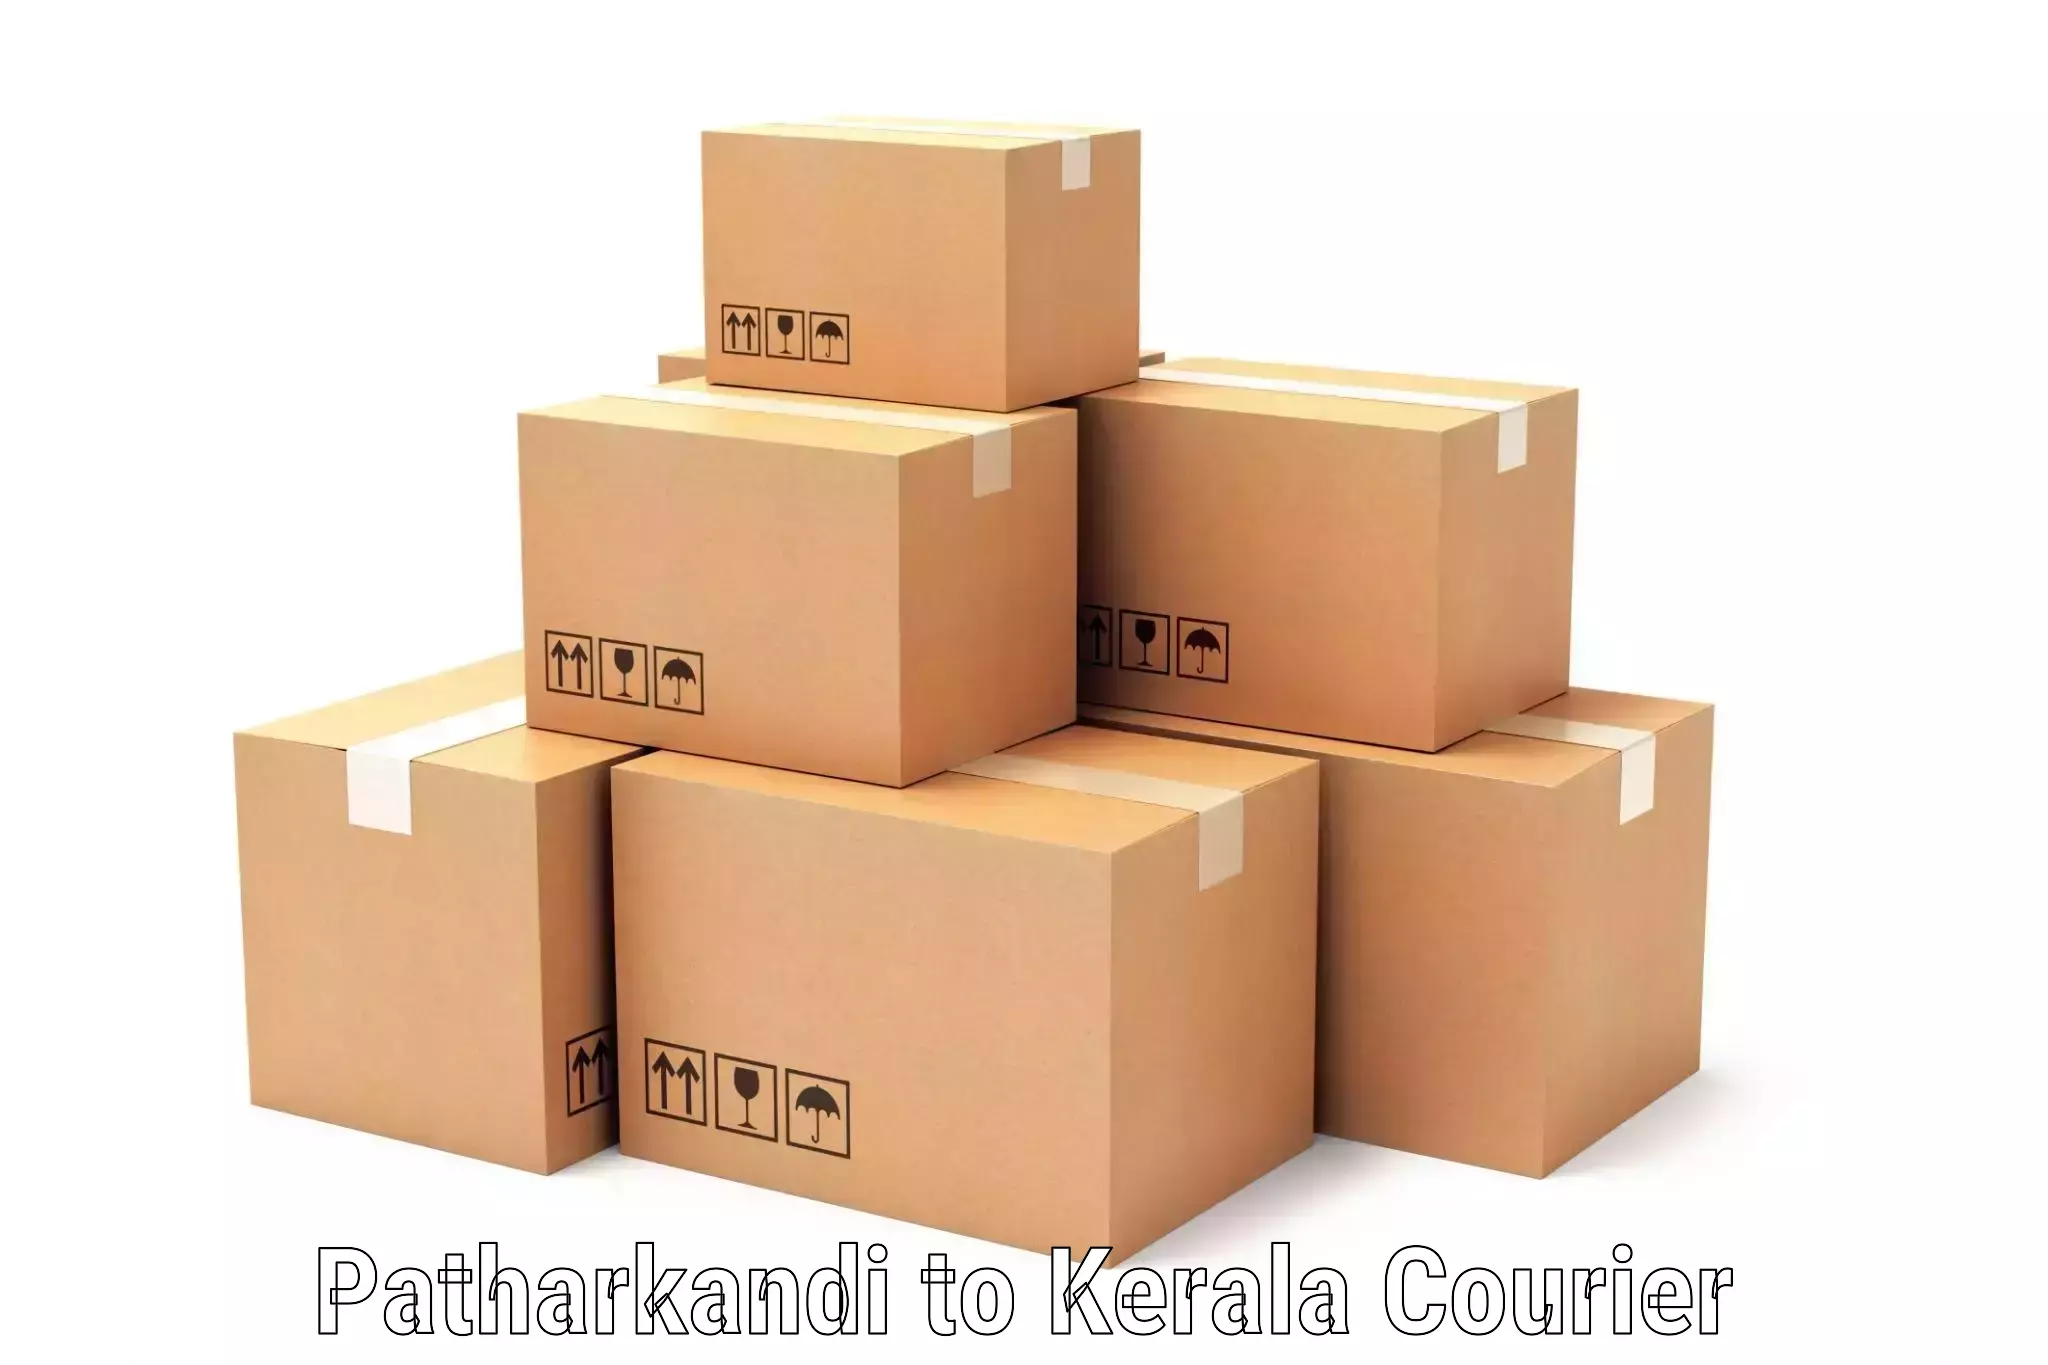 Affordable shipping rates Patharkandi to Kalanjoor